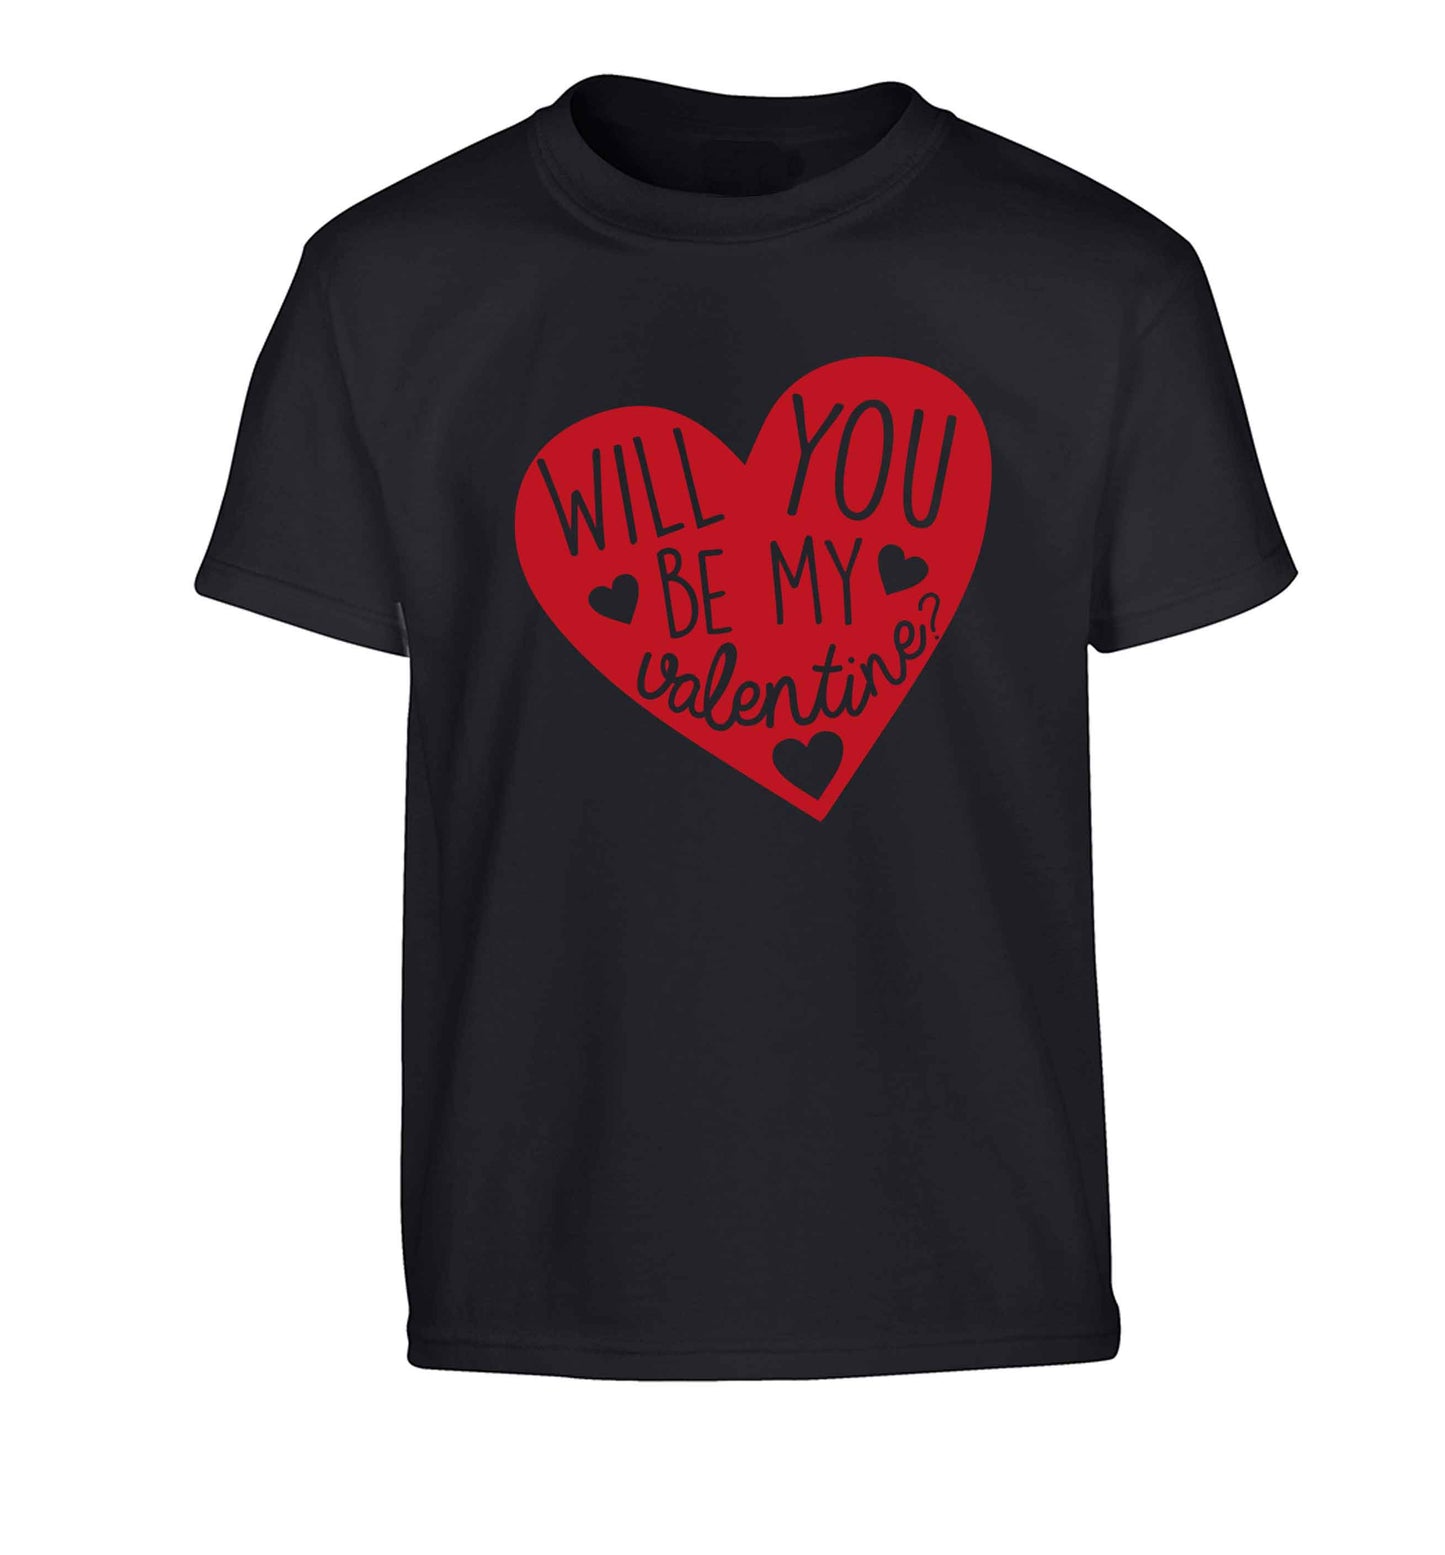 Will you be my valentine? Children's black Tshirt 12-13 Years